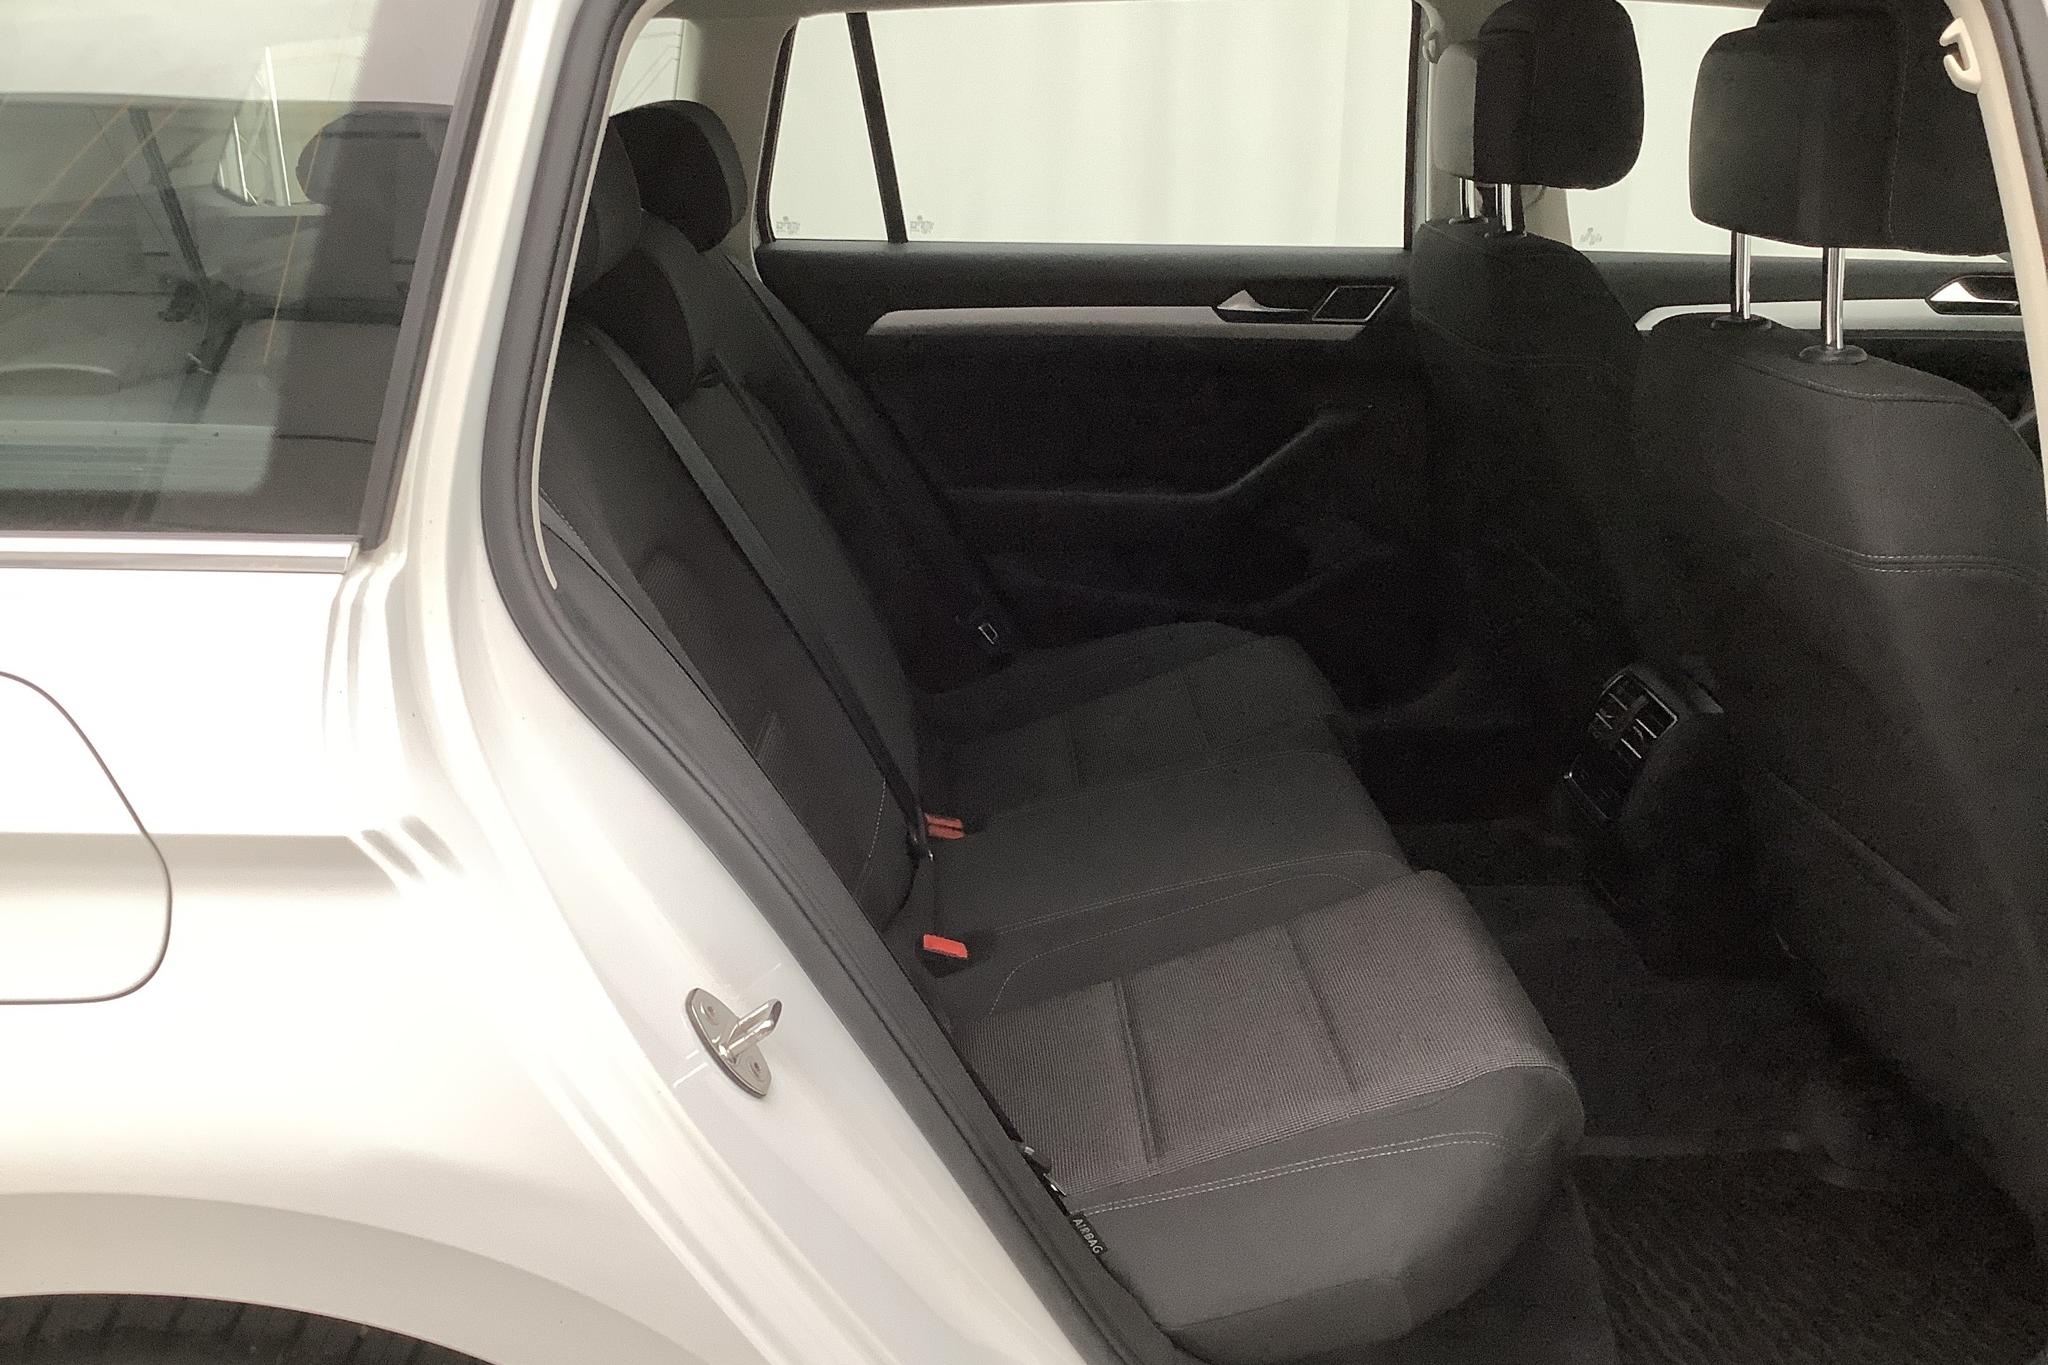 VW Passat 2.0 TDI Sportscombi (150hk) - 97 100 km - Manual - white - 2018